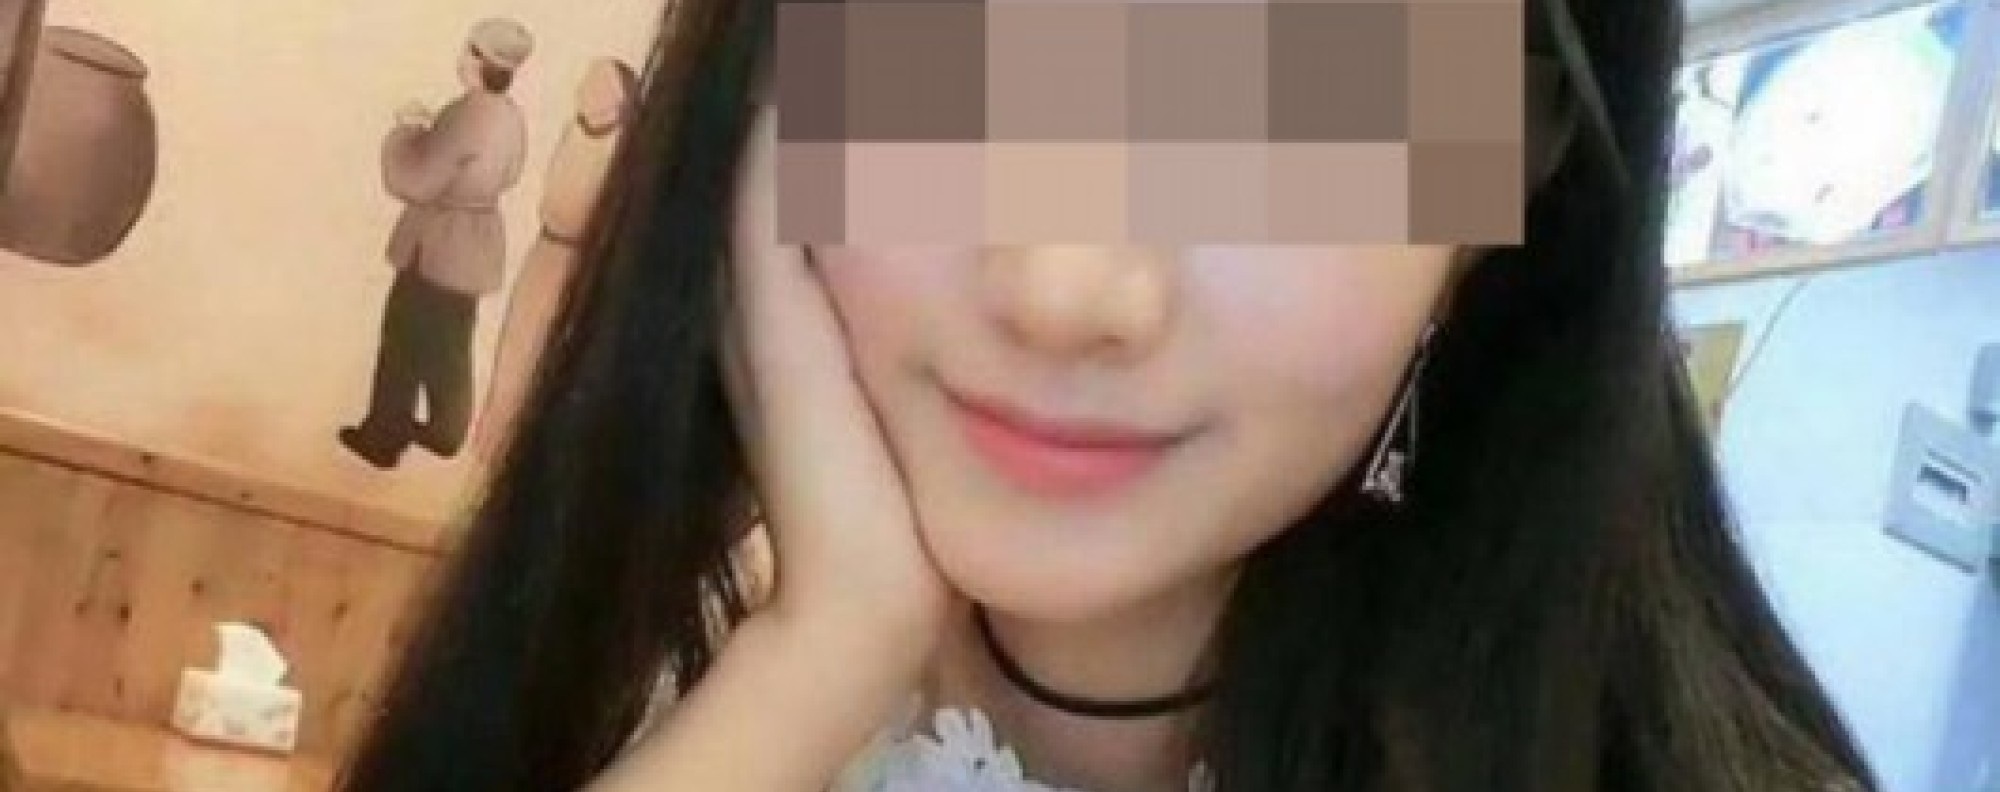 Online dating scam in Zhangzhou